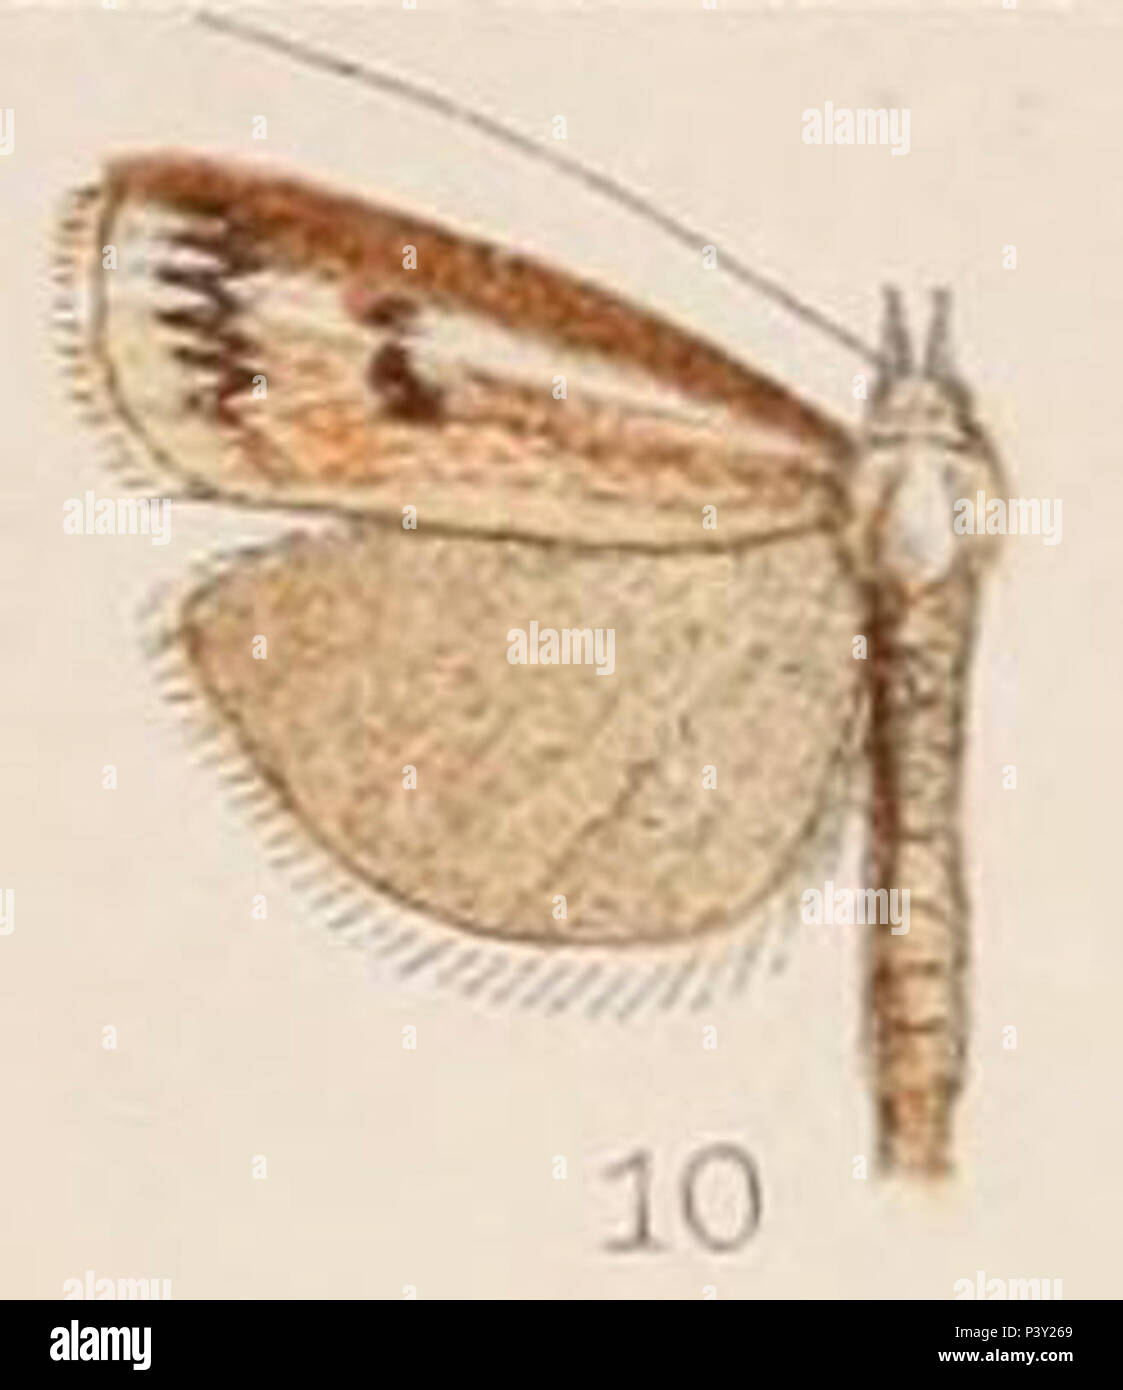 10-Crambus dianiphalis Hampson 1908. Stock Photo